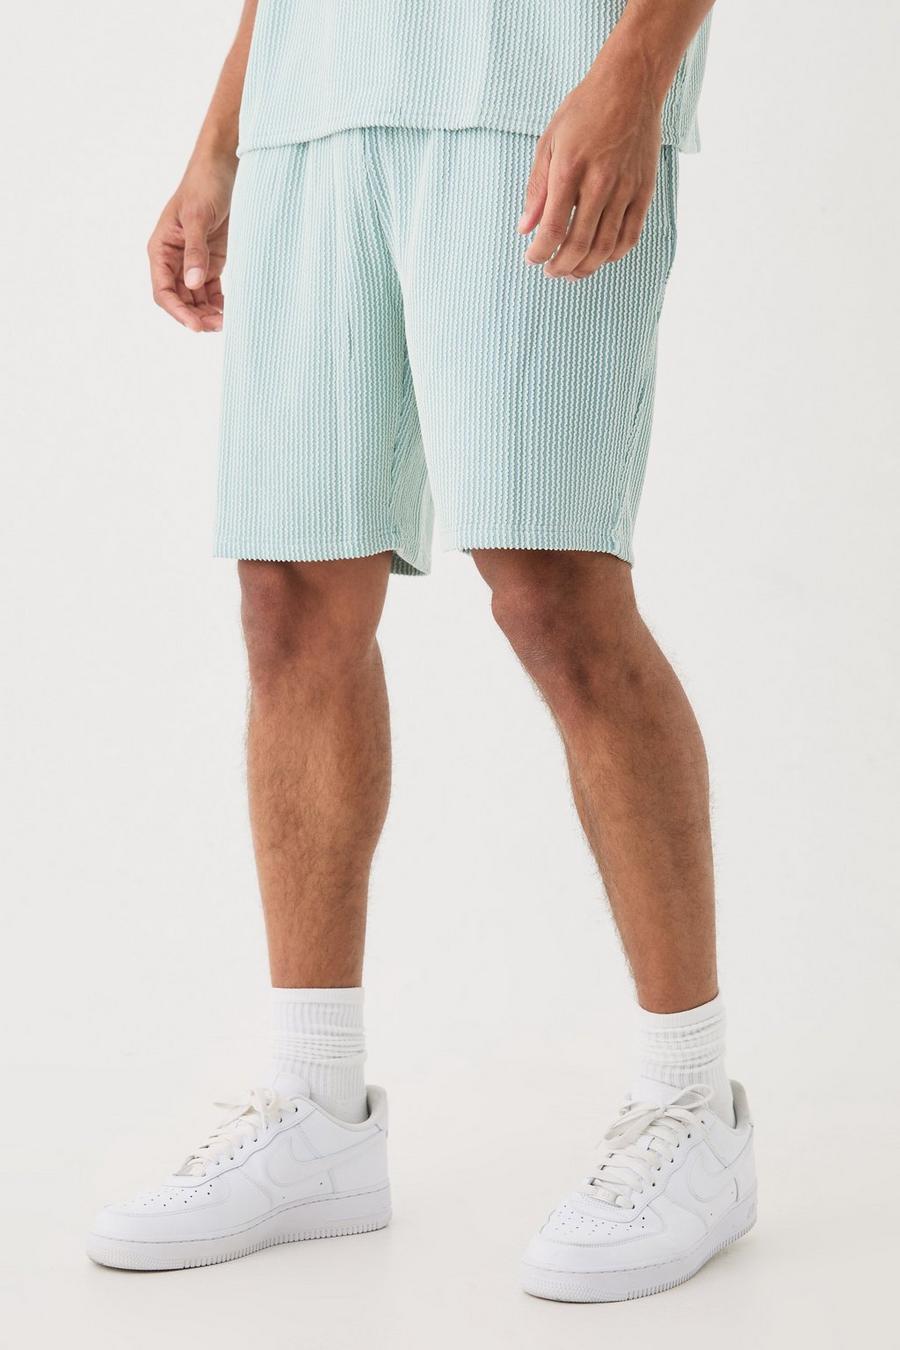 Lockere mittellange strukturierte Shorts mit Streifen, Dusty blue image number 1